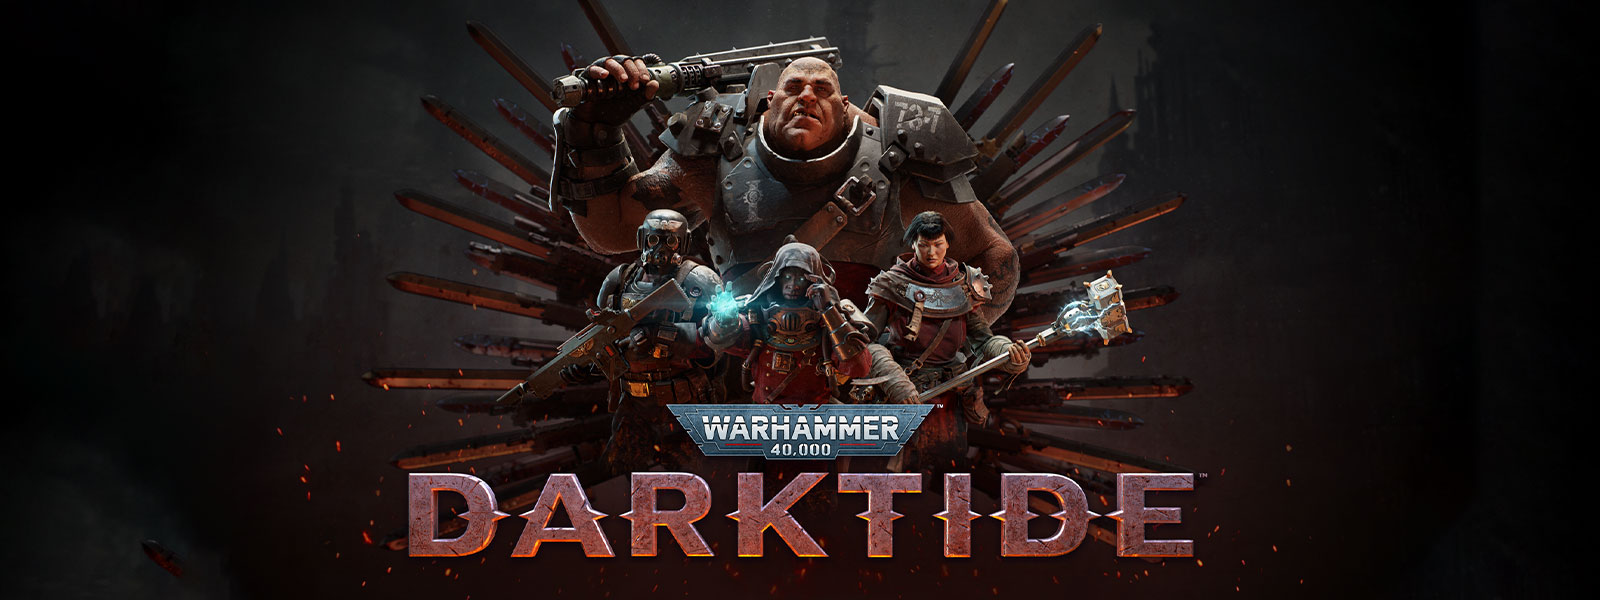 Warhammer 40,000: Darktide, une équipe de personnages en armure pose devant un motif de lame.